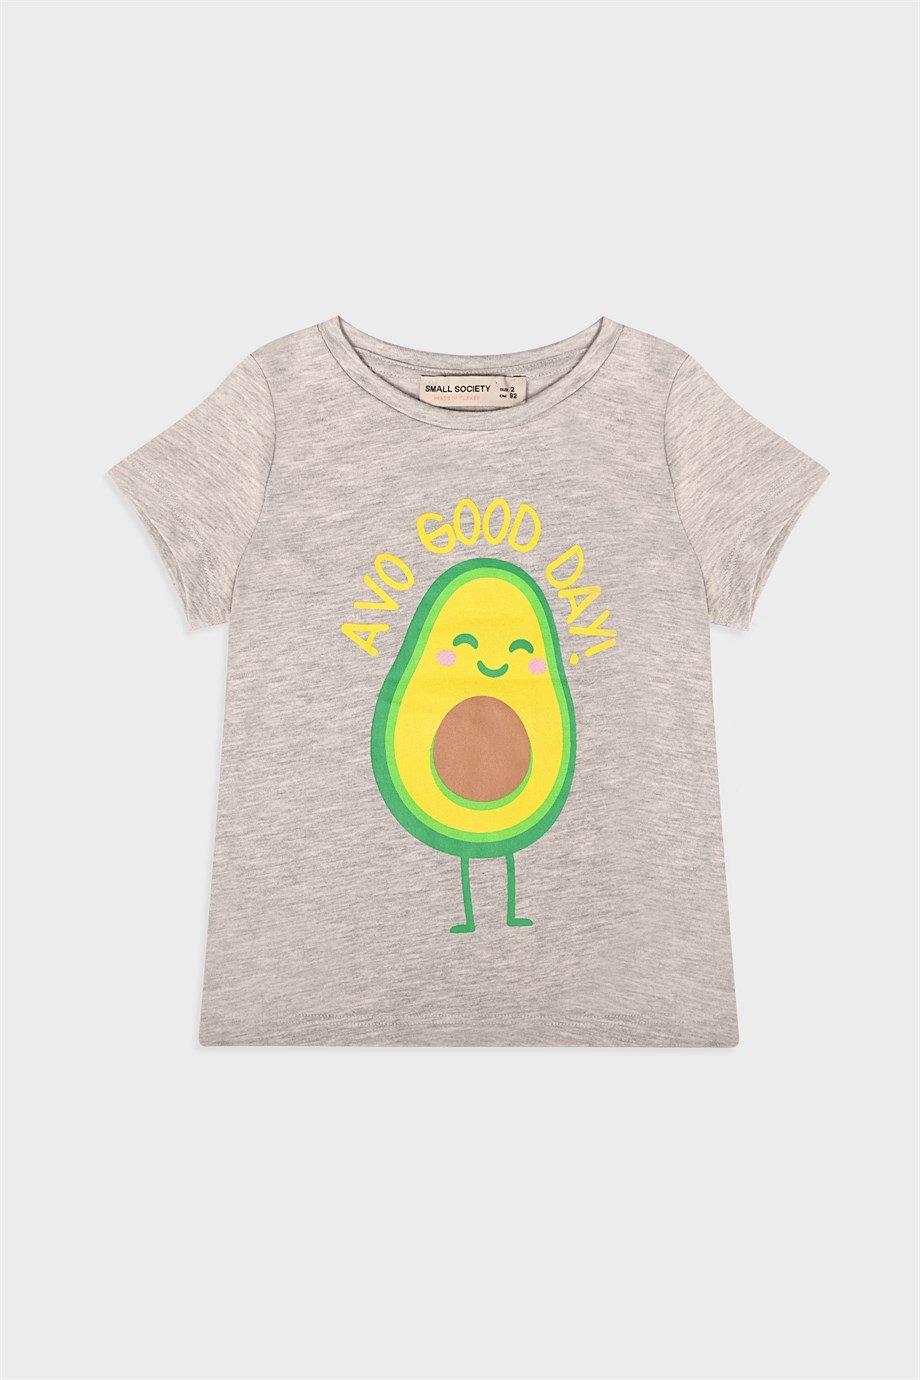 Small Society Grijs Avacado bedrukt T-shirt voor meisjes